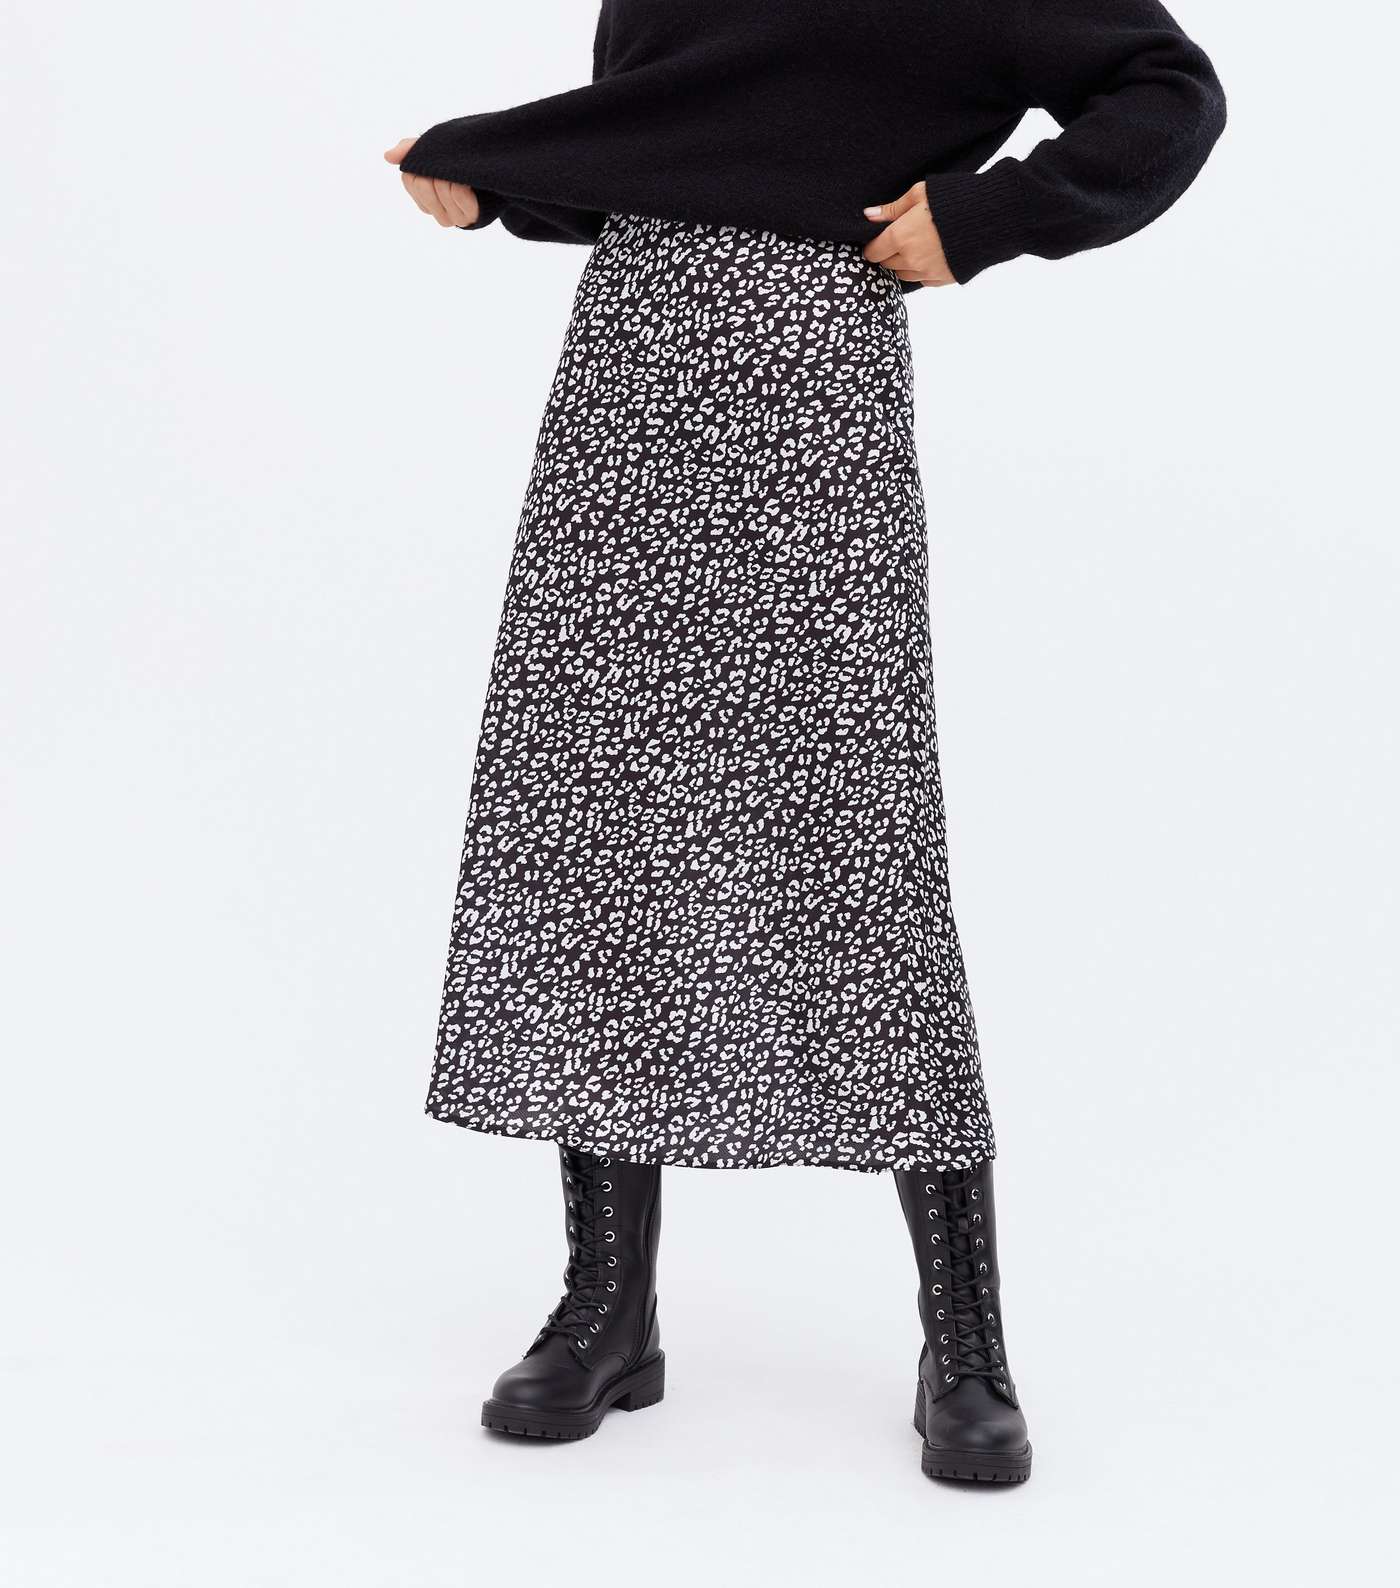 Black Leopard Print Satin Bias Cut Midi Skirt Image 2